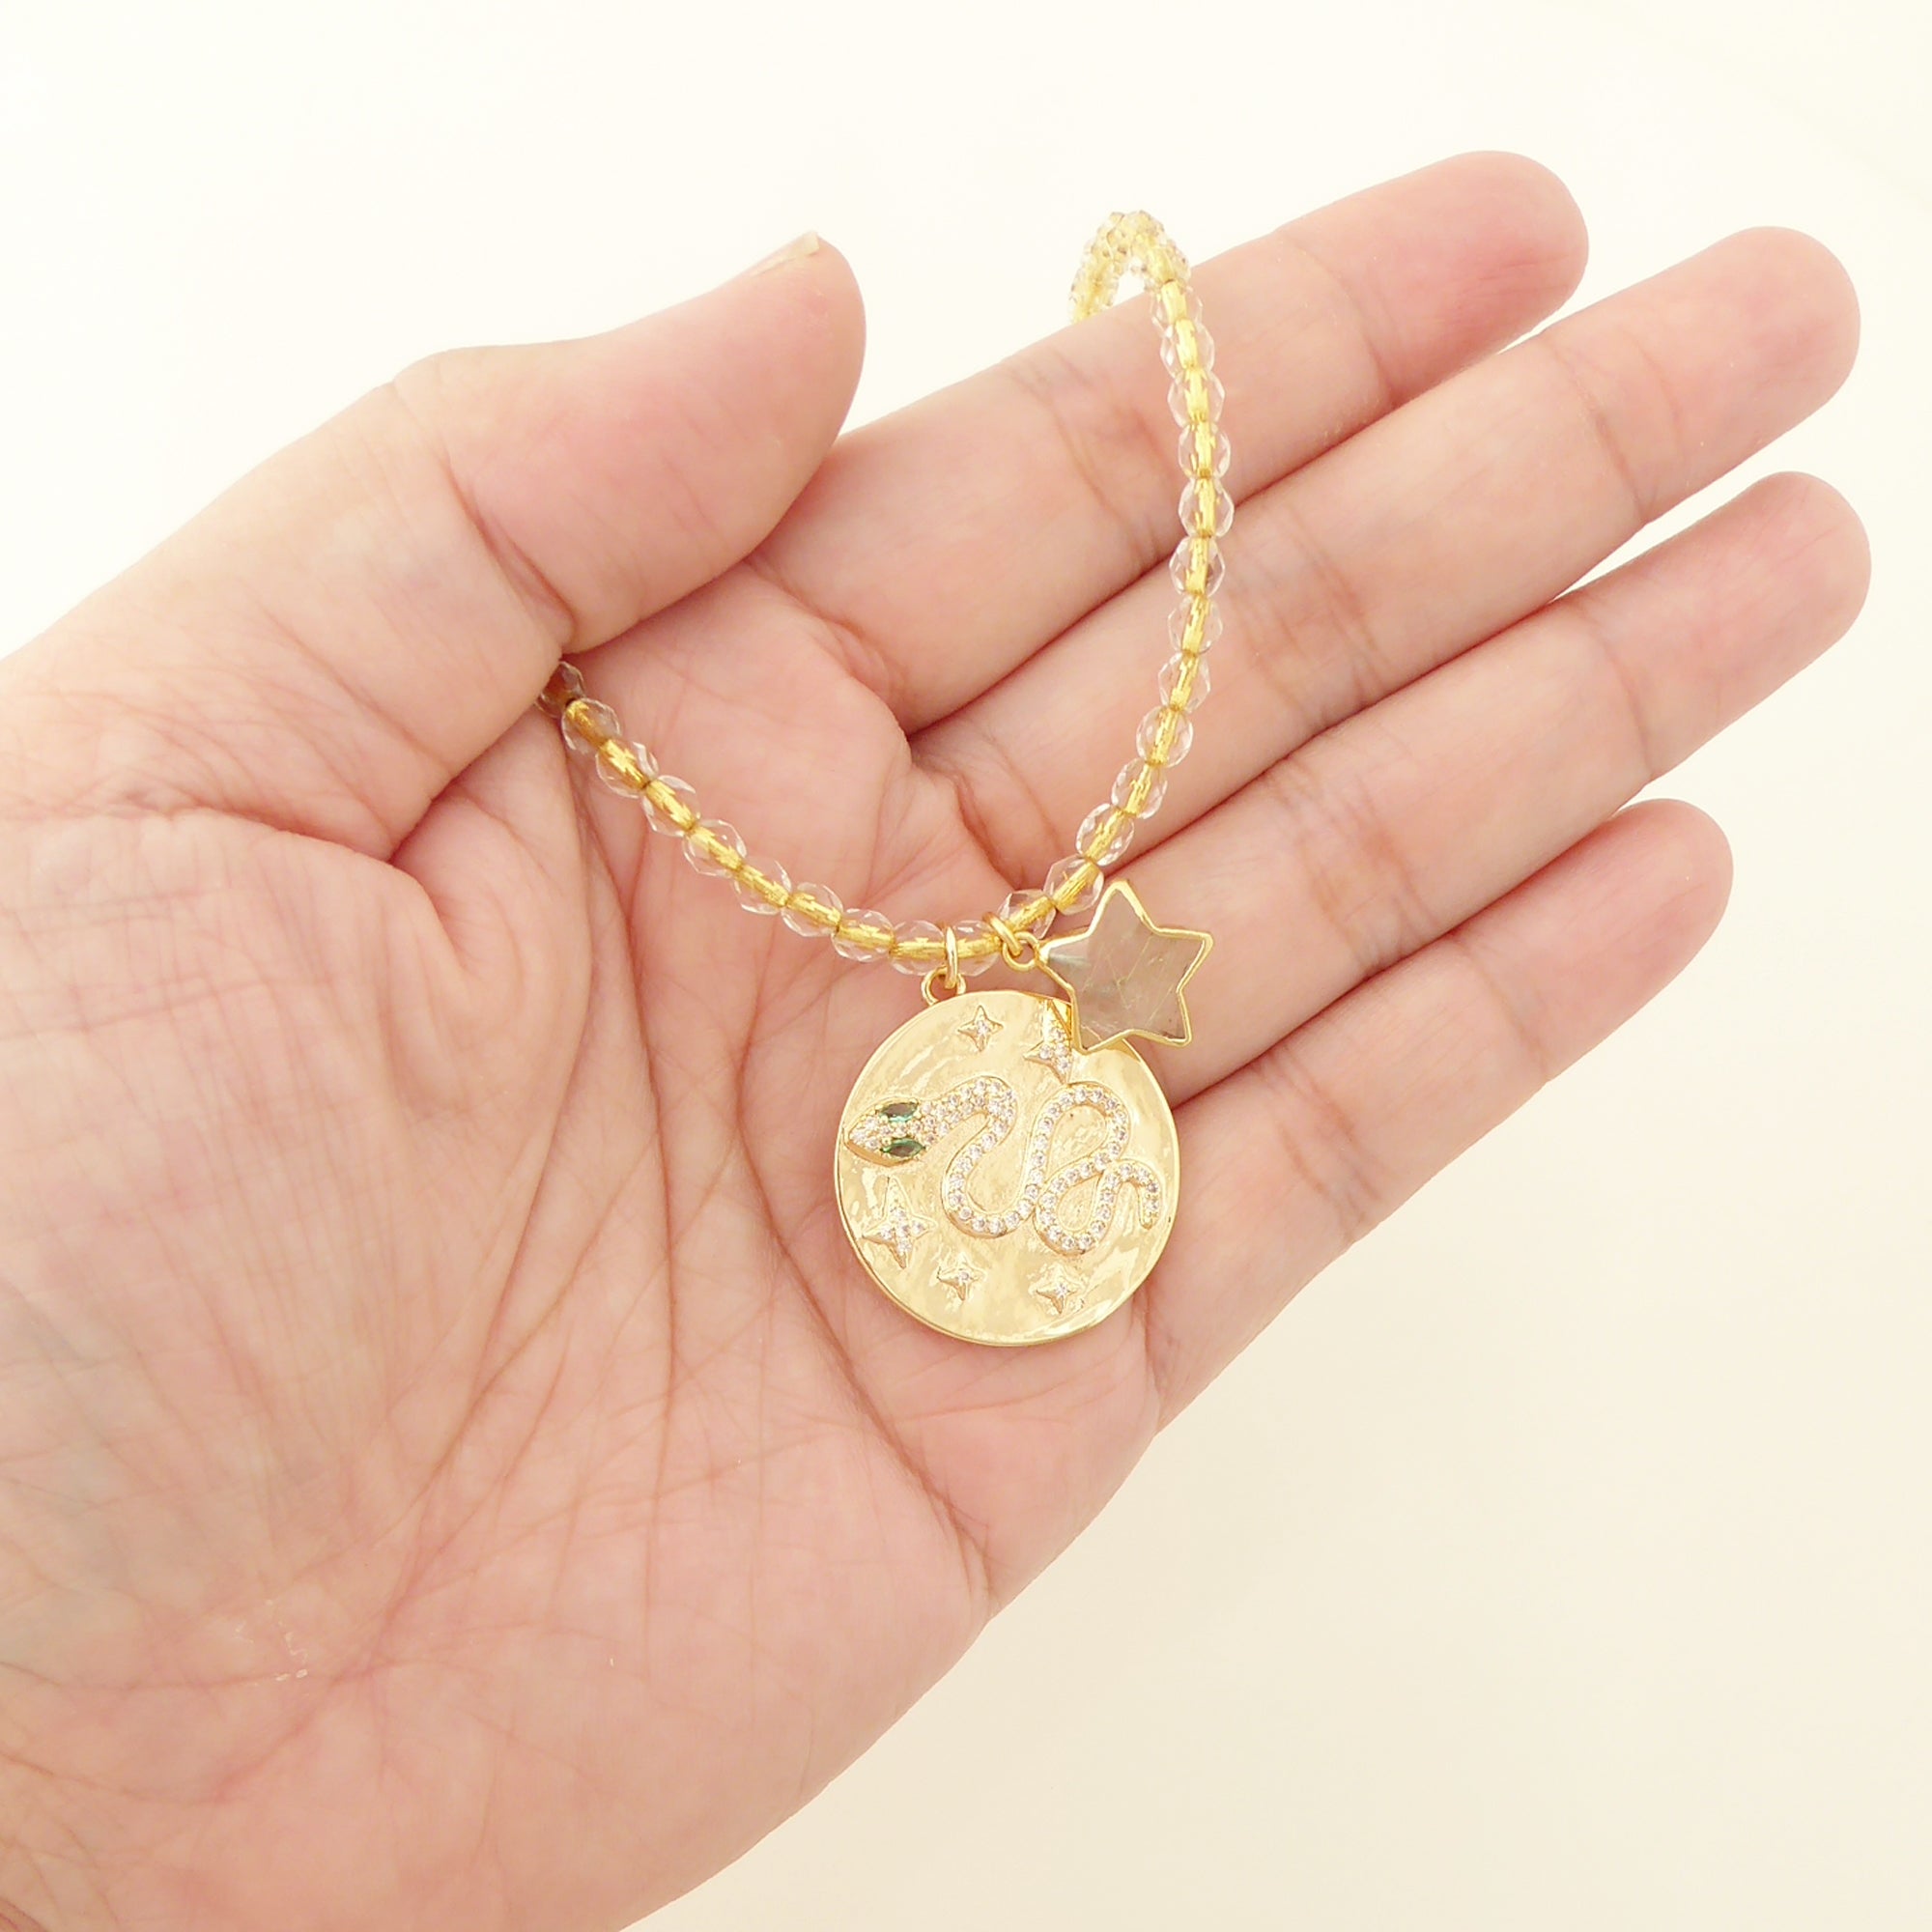 Gold snake medallion necklace by Jenny Dayco 5